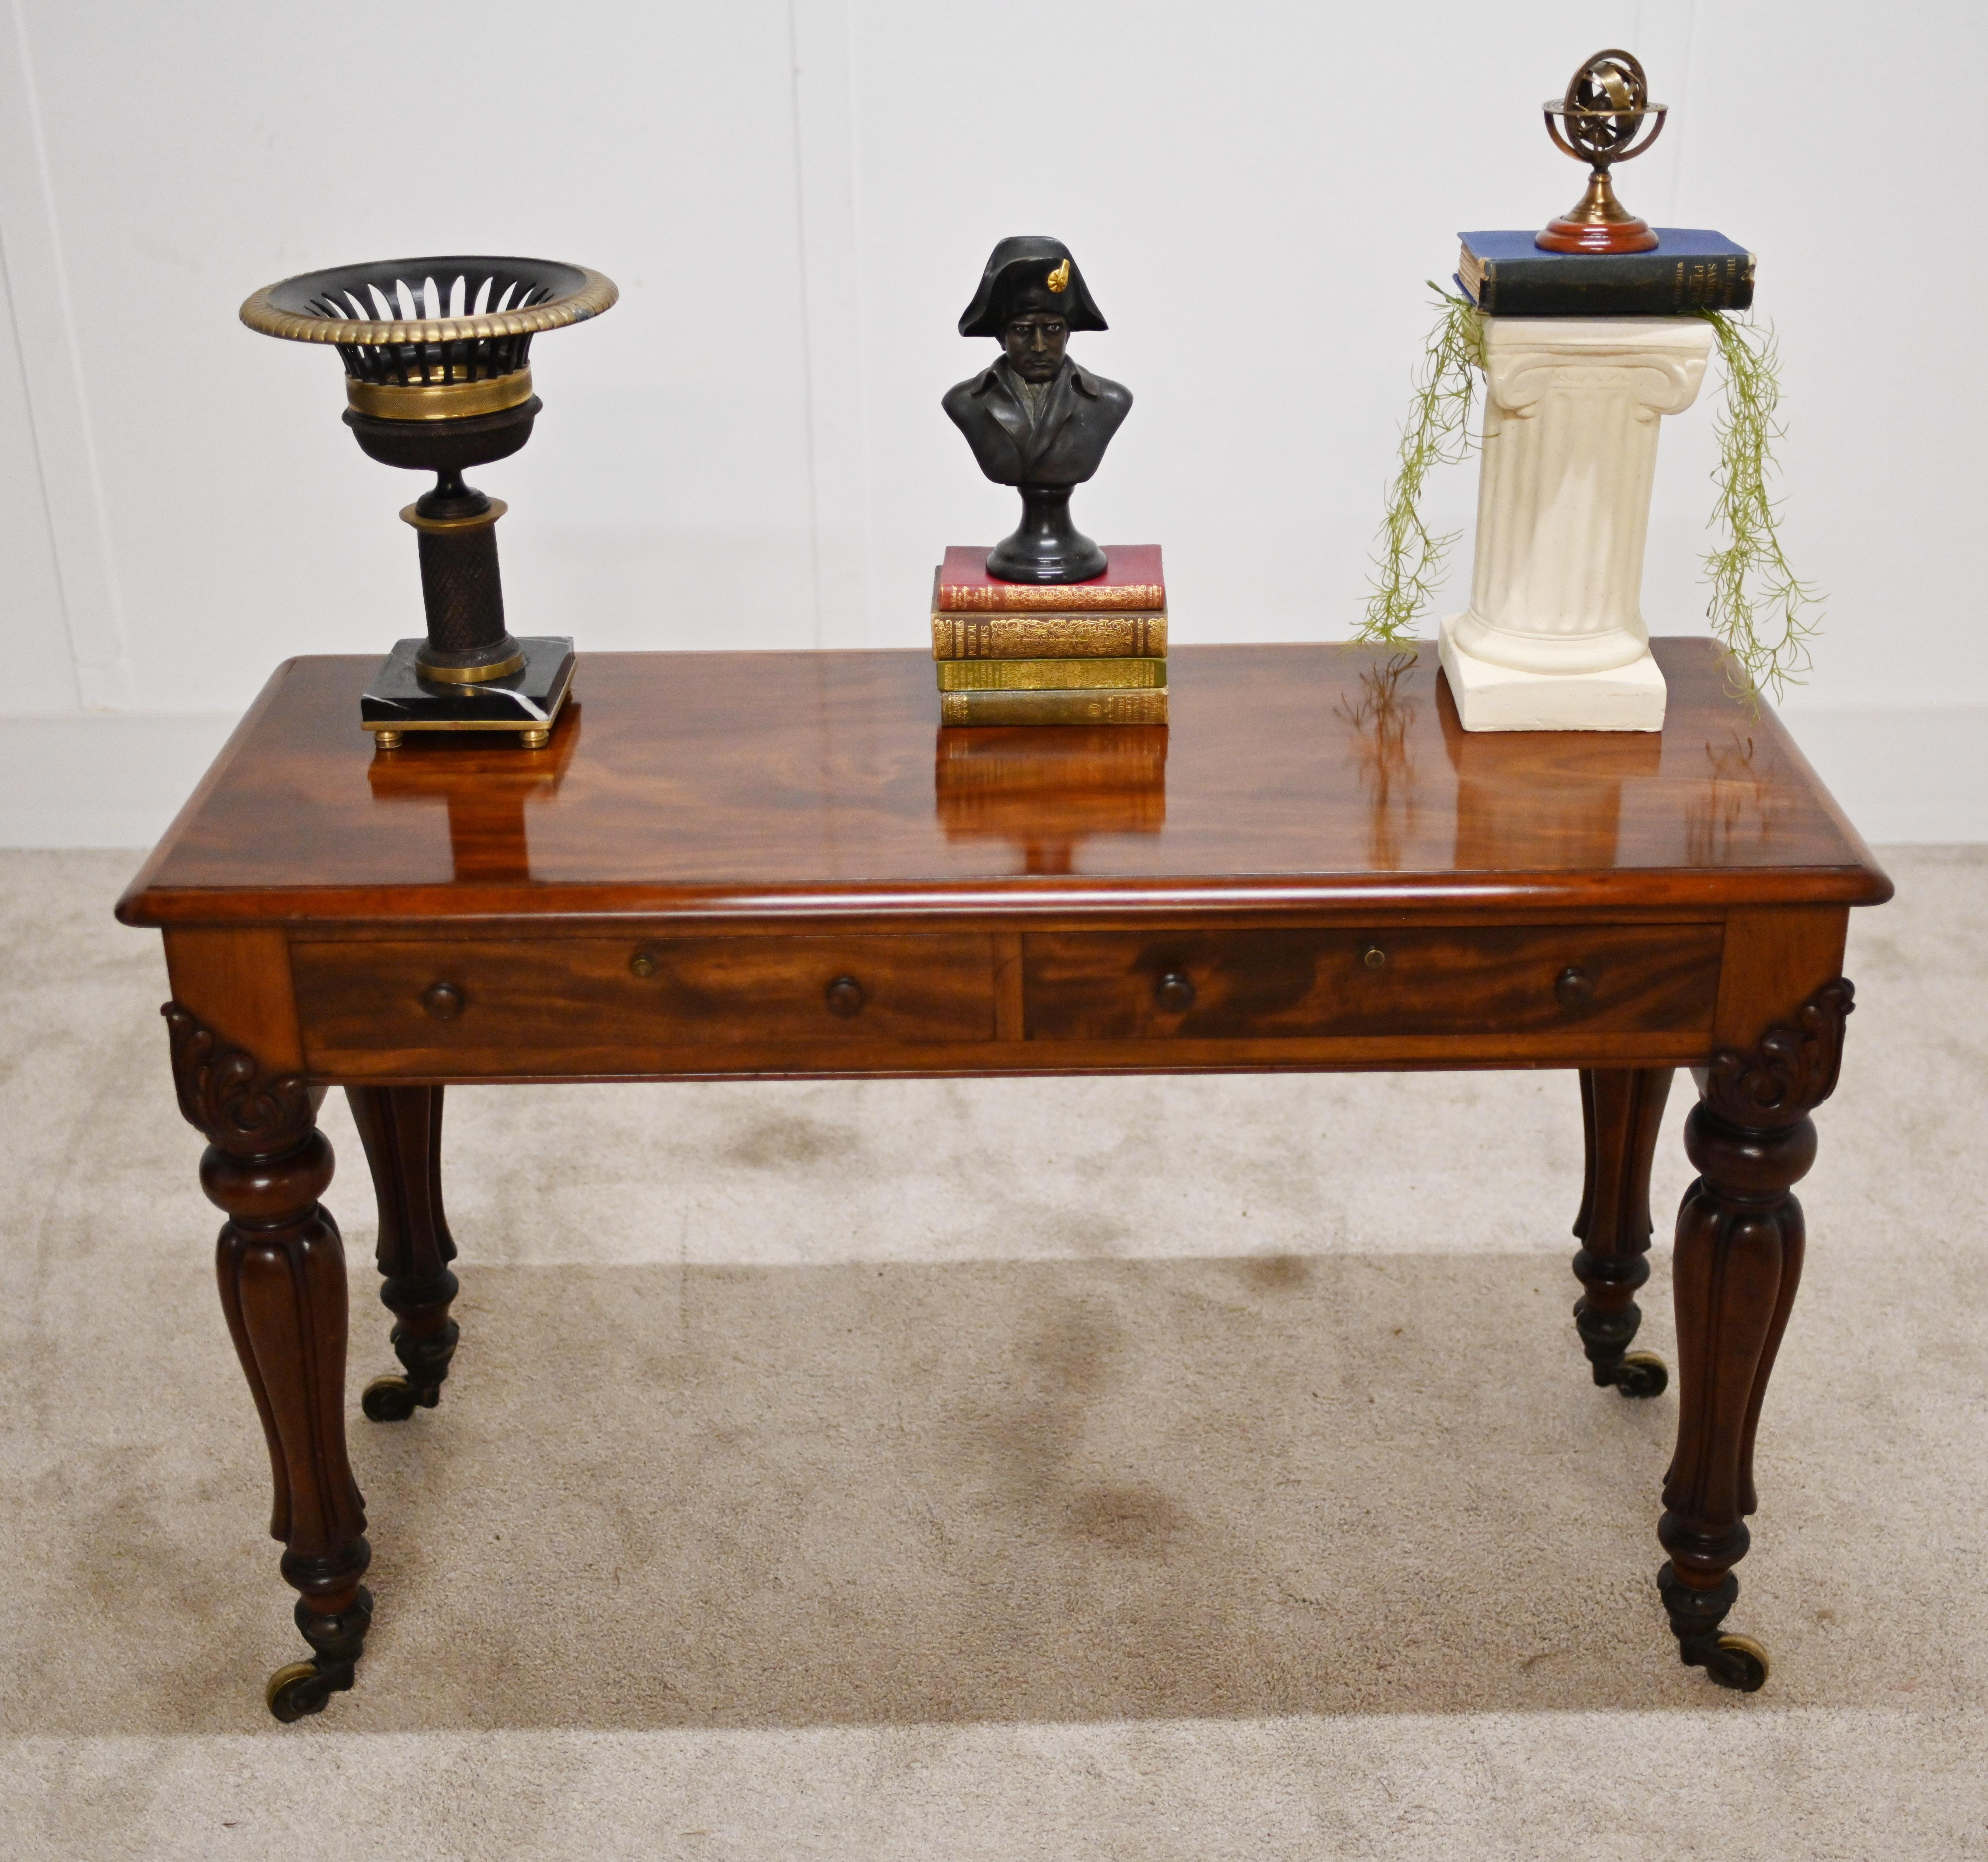 Ein freistehender Schreibtisch von Hamptons & Sons of Pall Mall London aus geflammtem Mahagoni
CIRCA 1840
Raffiniertes Möbelstück, ideal für die Einrichtung eines Heimbüros
Die beiden Schubladen sind mit Brahmar-Schlössern ausgestattet
Hampton &